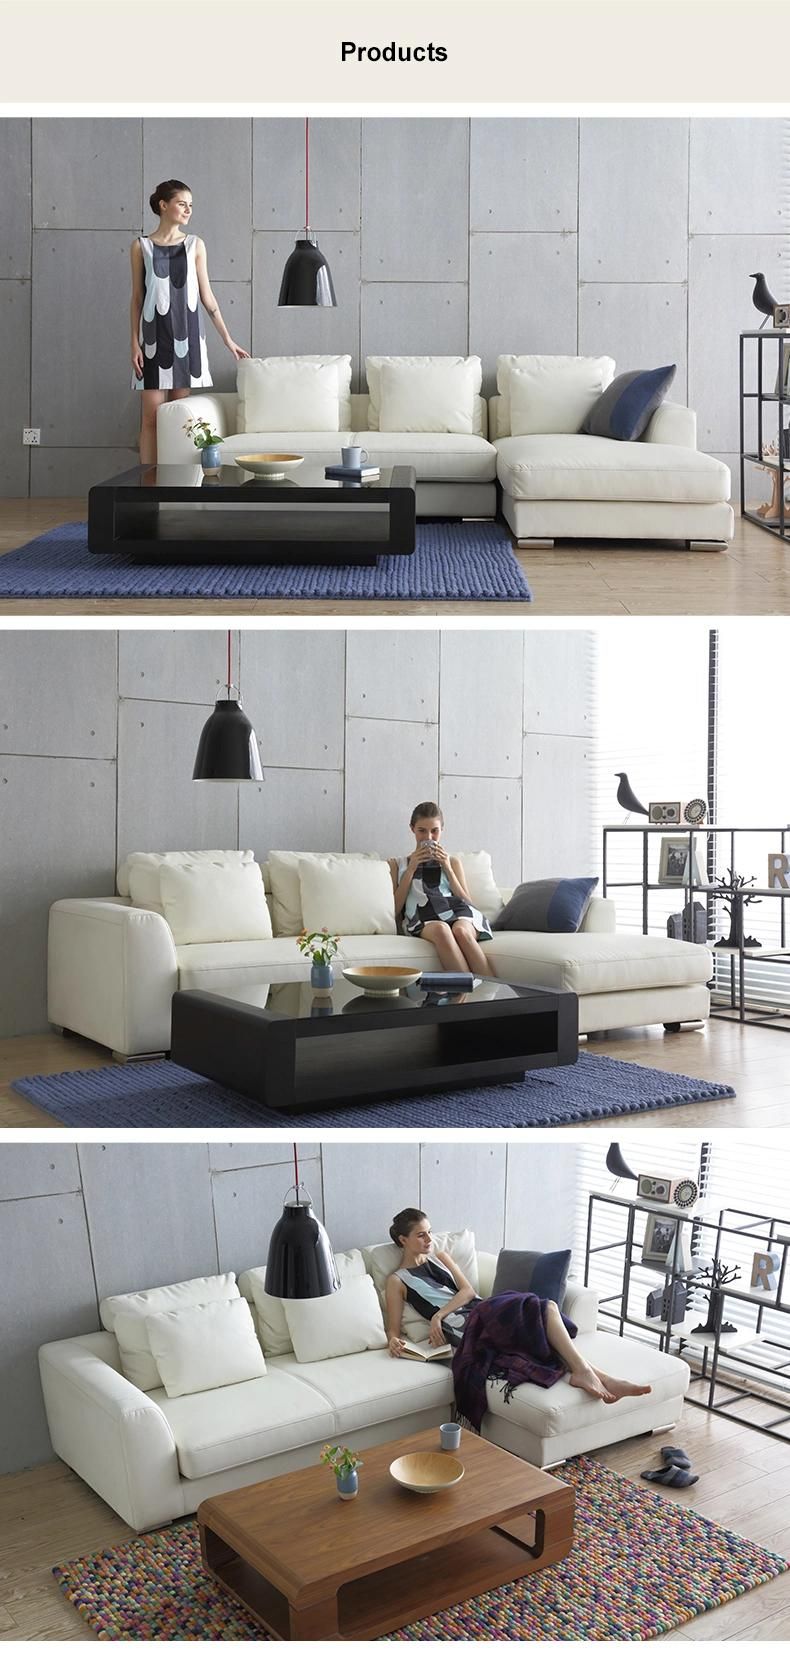 Wood Sponge Home Recliner Sets Living Room Furniture Sofa